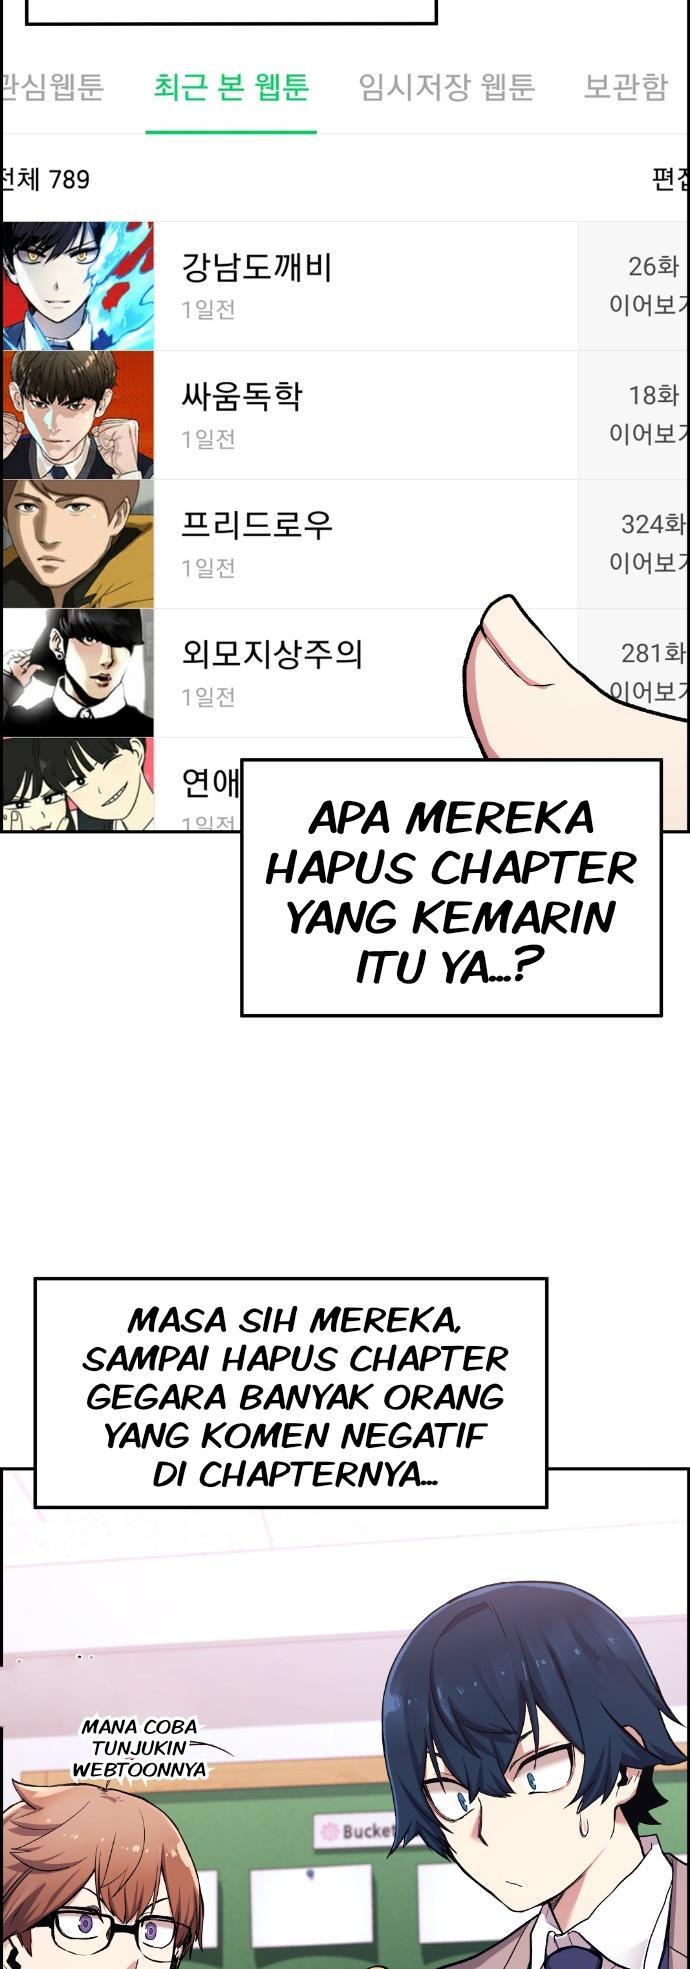 Webtoon Character Na Kang Lim Chapter 1